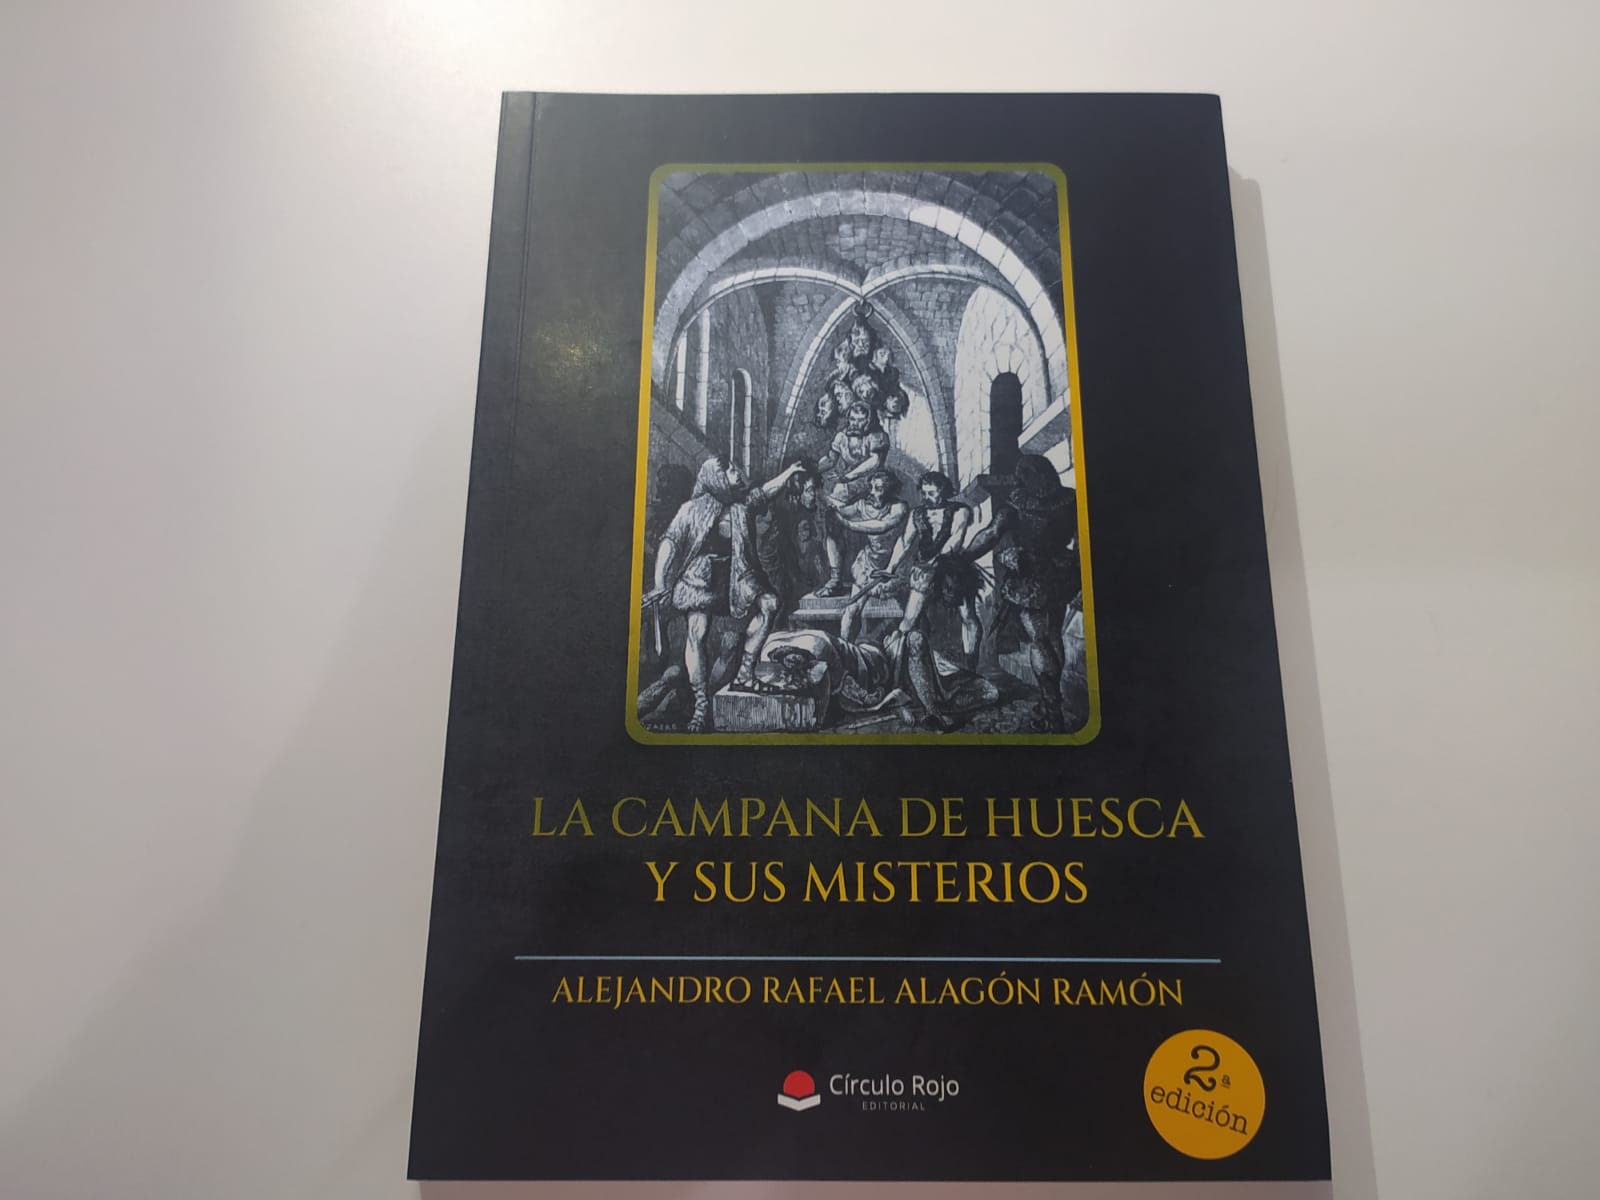 Alejandro Rafael Alagón Ramón "La campana de Huesca y sus misterios"